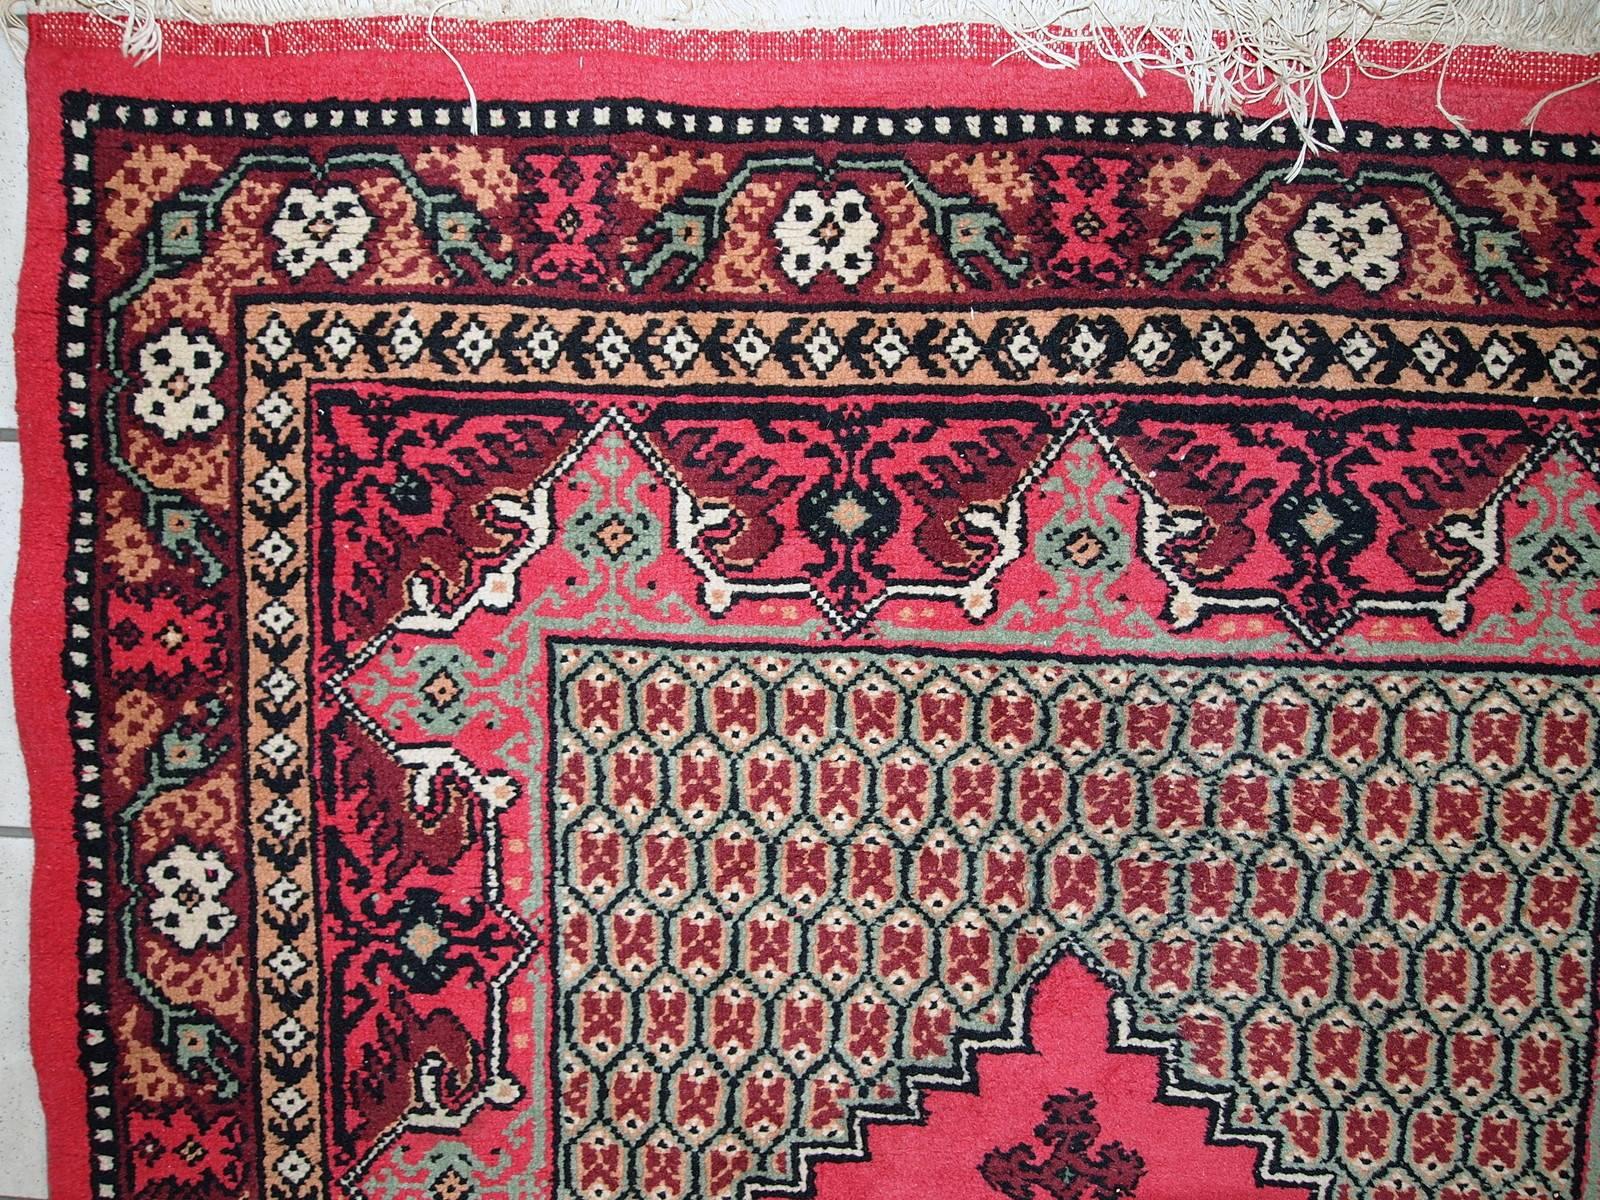 Algerischer Berberteppich im Originalzustand. Der Teppich hat ein traditionelles Berberdesign mit einem großen rautenförmigen Medaillon in der Mitte in rosa Farbe. Die tief burgunderrote Bordüre ist mit floralen Ornamenten verziert. Der Teppich ist